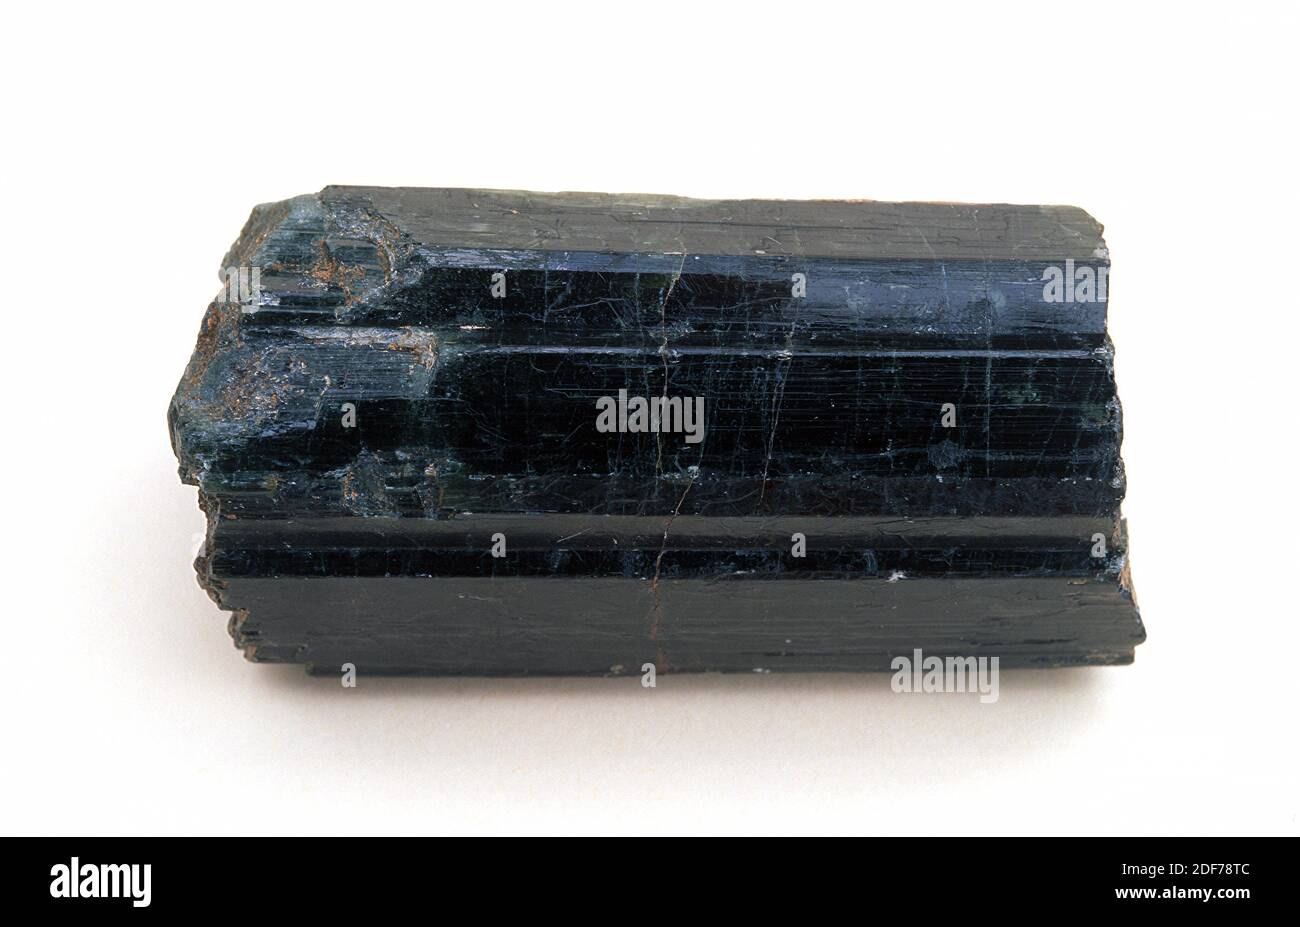 La tourmaline est un minéral au silicate de bore. Cristal prismatique noir. Banque D'Images